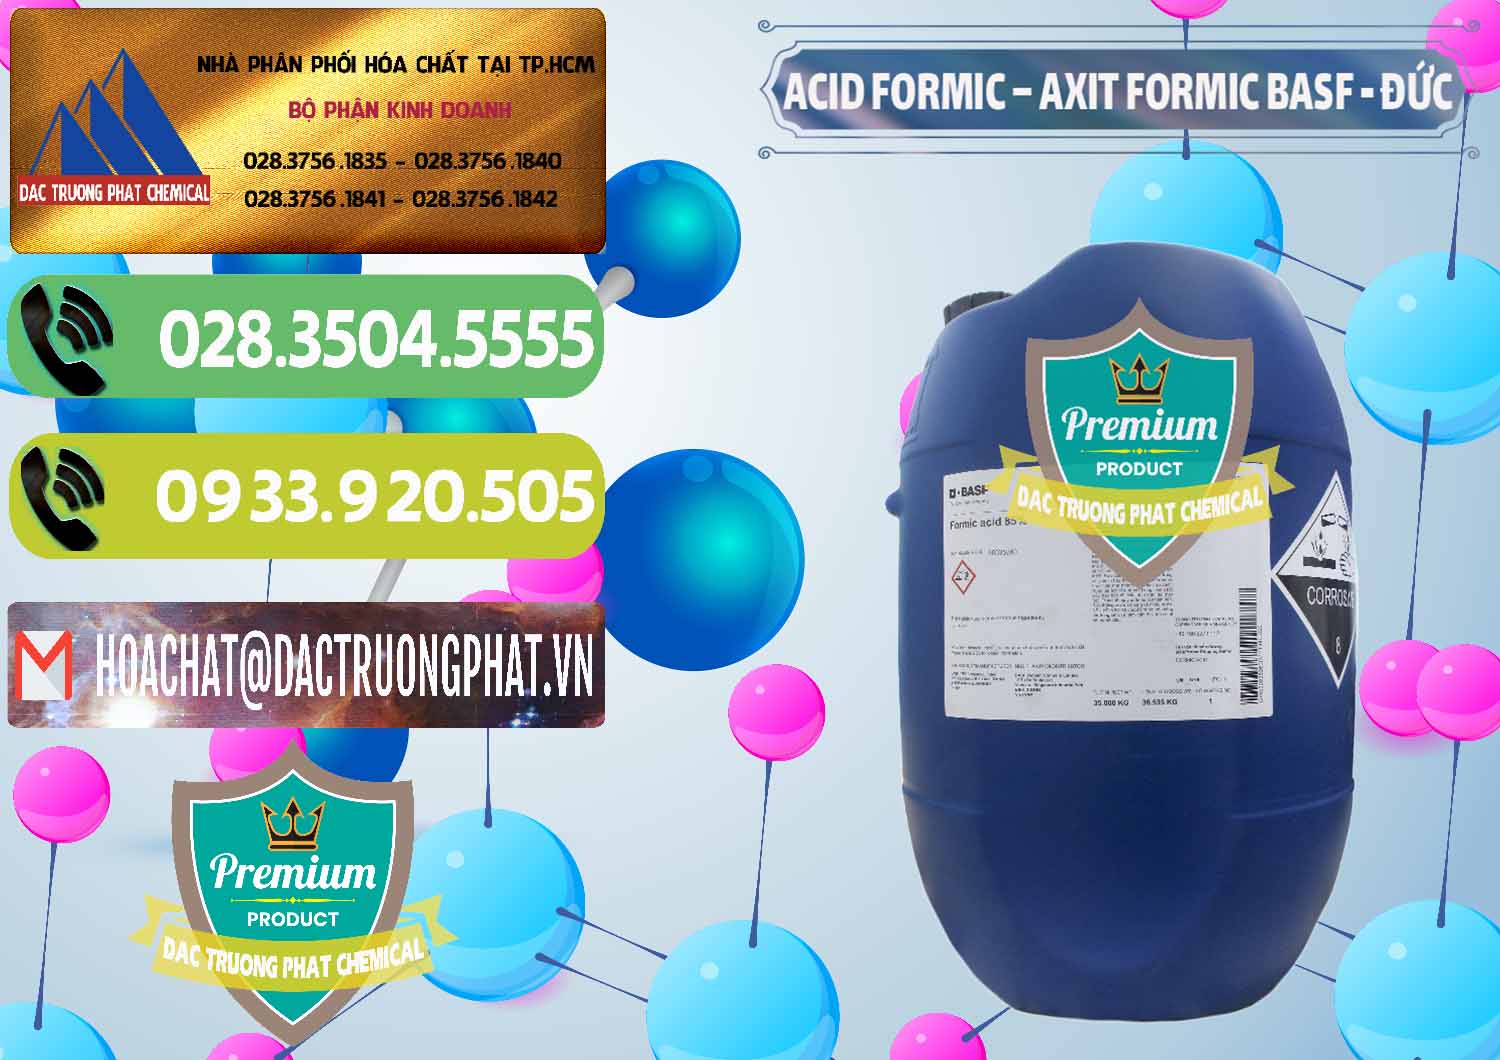 Nhà phân phối - bán Acid Formic - Axit Formic BASF Đức Germany - 0028 - Phân phối & cung cấp hóa chất tại TP.HCM - hoachatmientay.vn